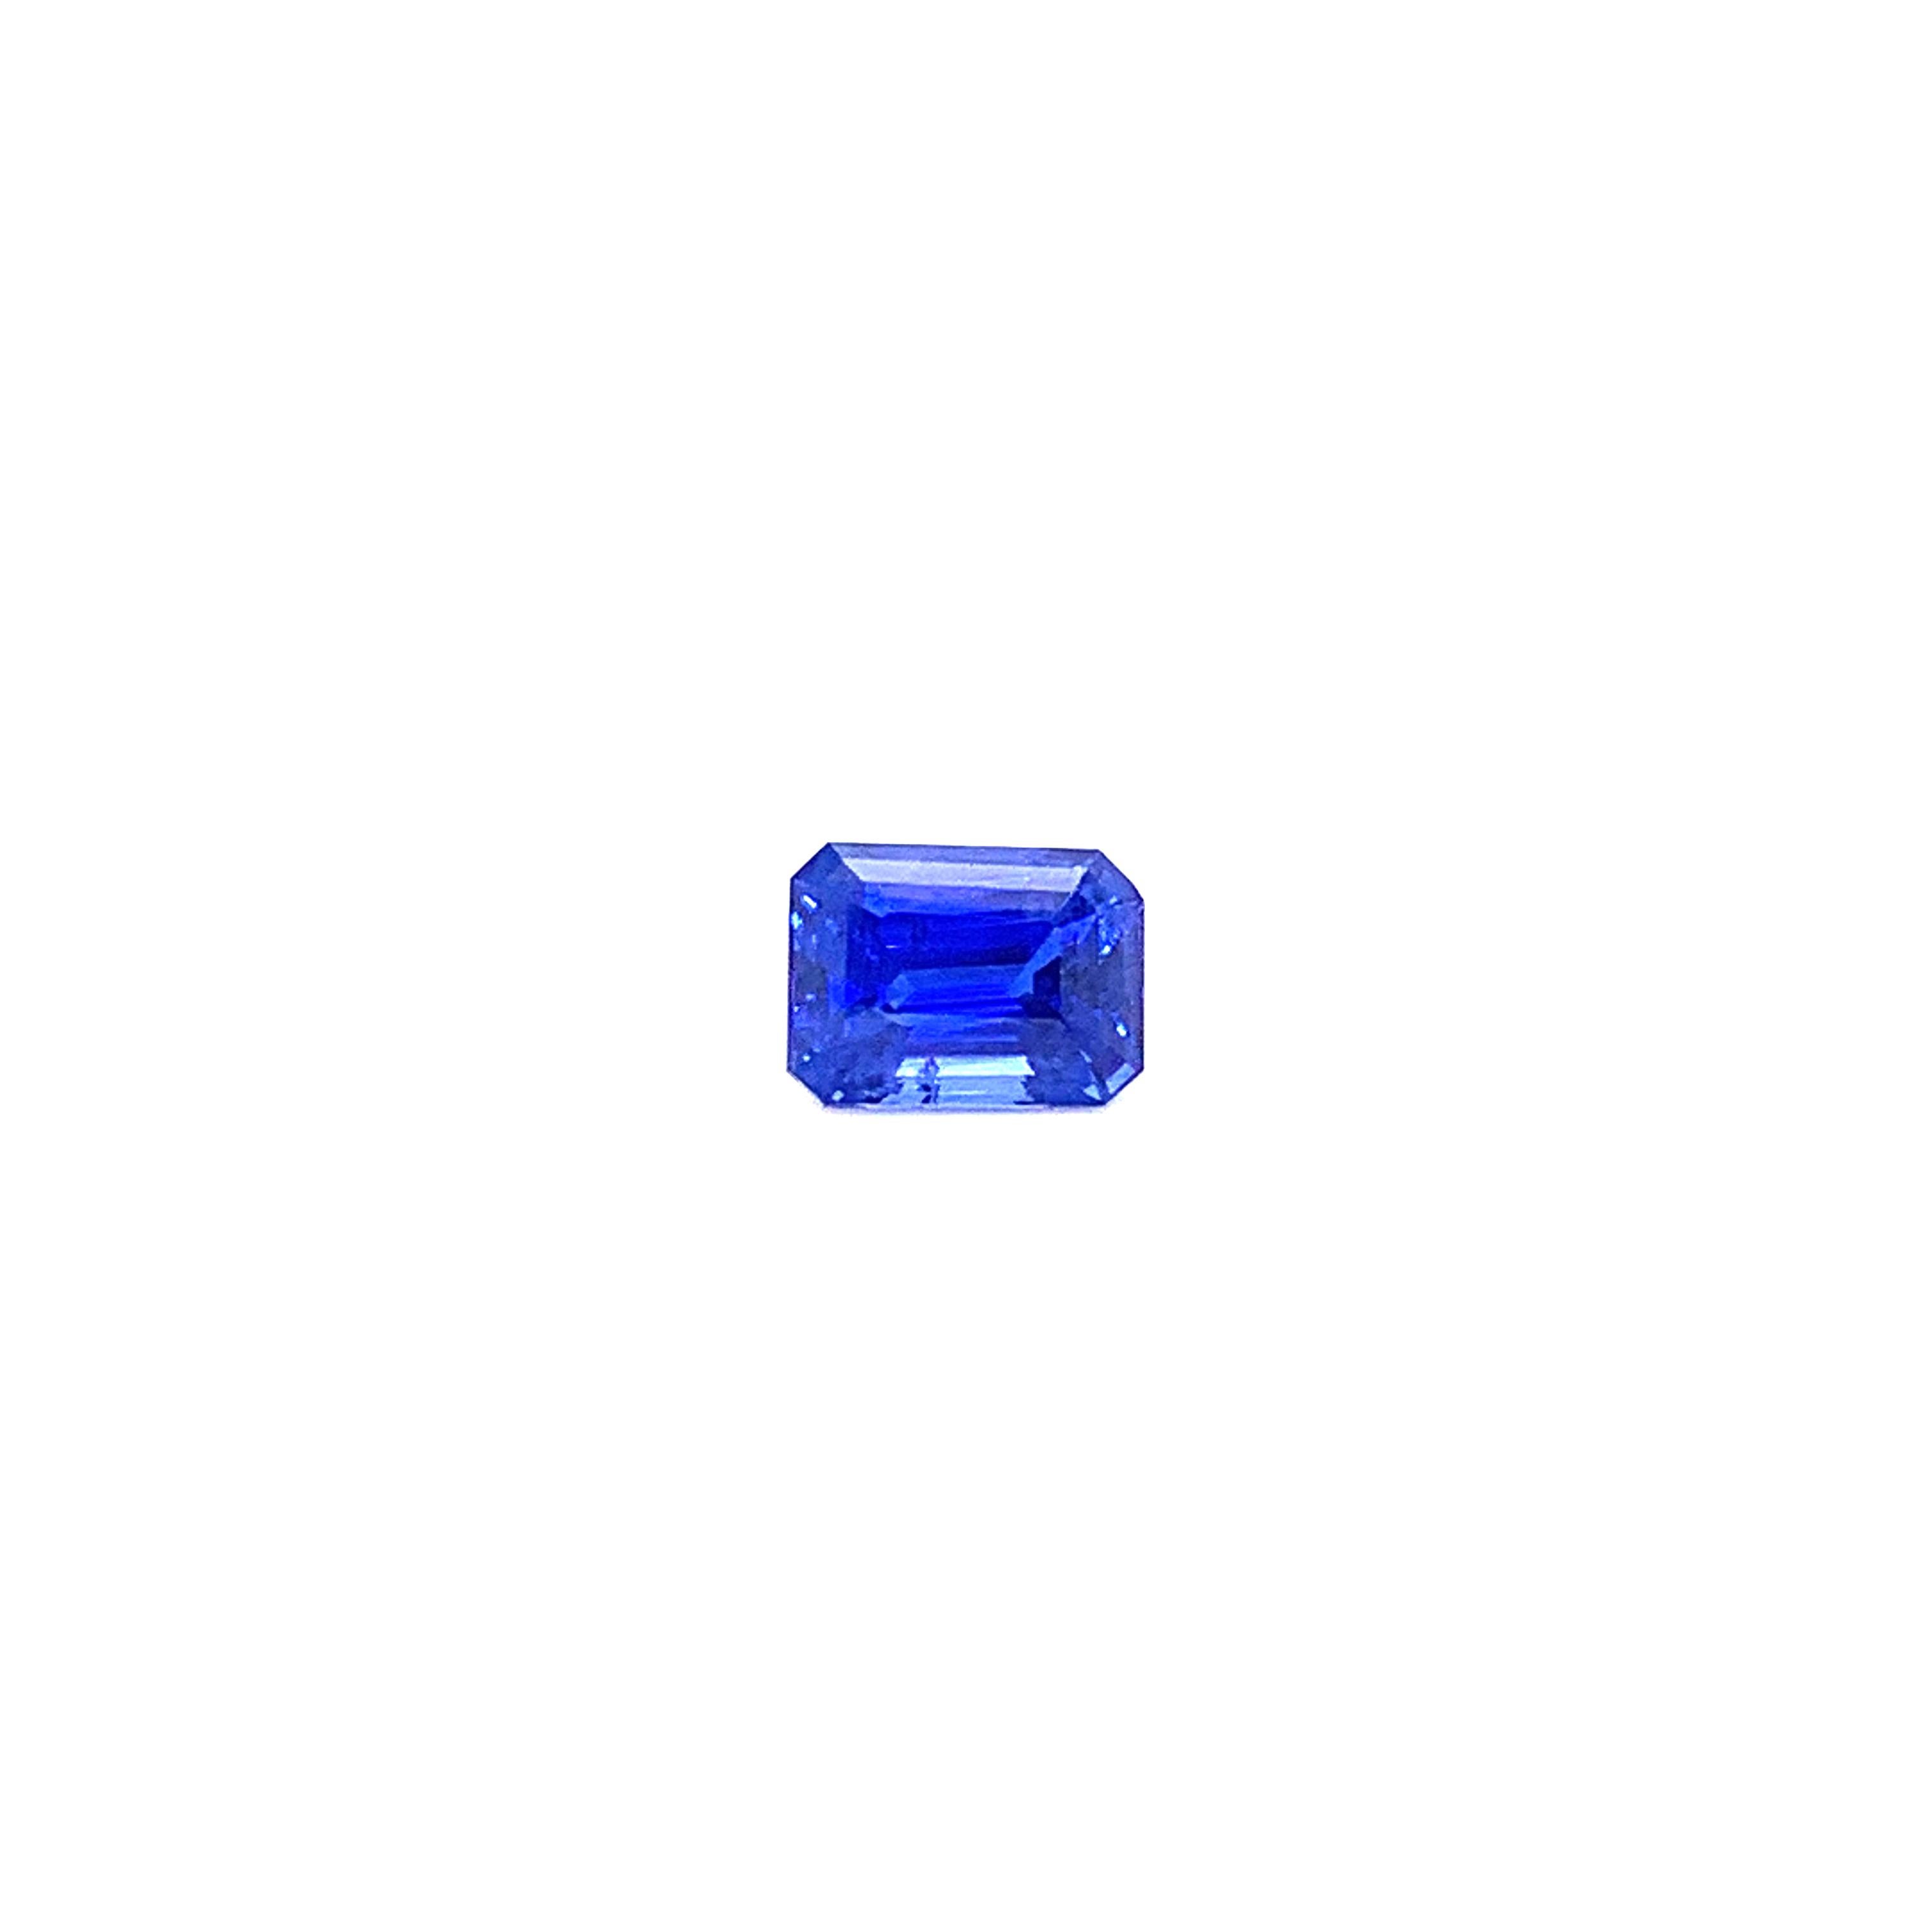 Octagon Cut 2.30 Carat Octagon-Cut Vivid Royal Blue Sapphire For Sale